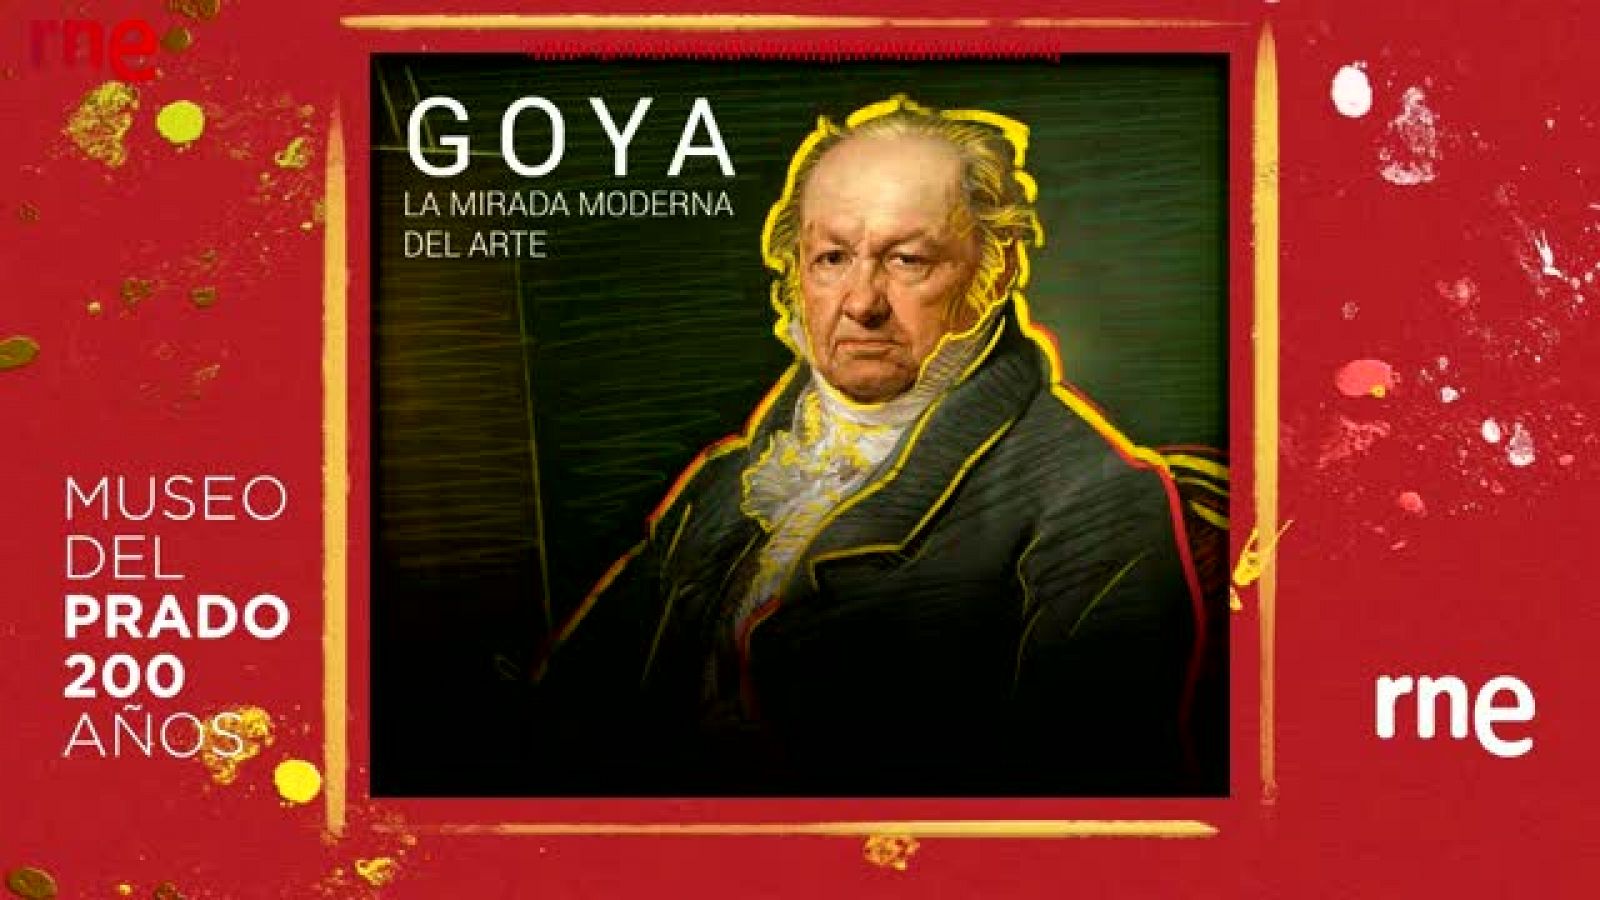 Documentos RNE- Goya: la mirada moderna del arte - Ver ahora